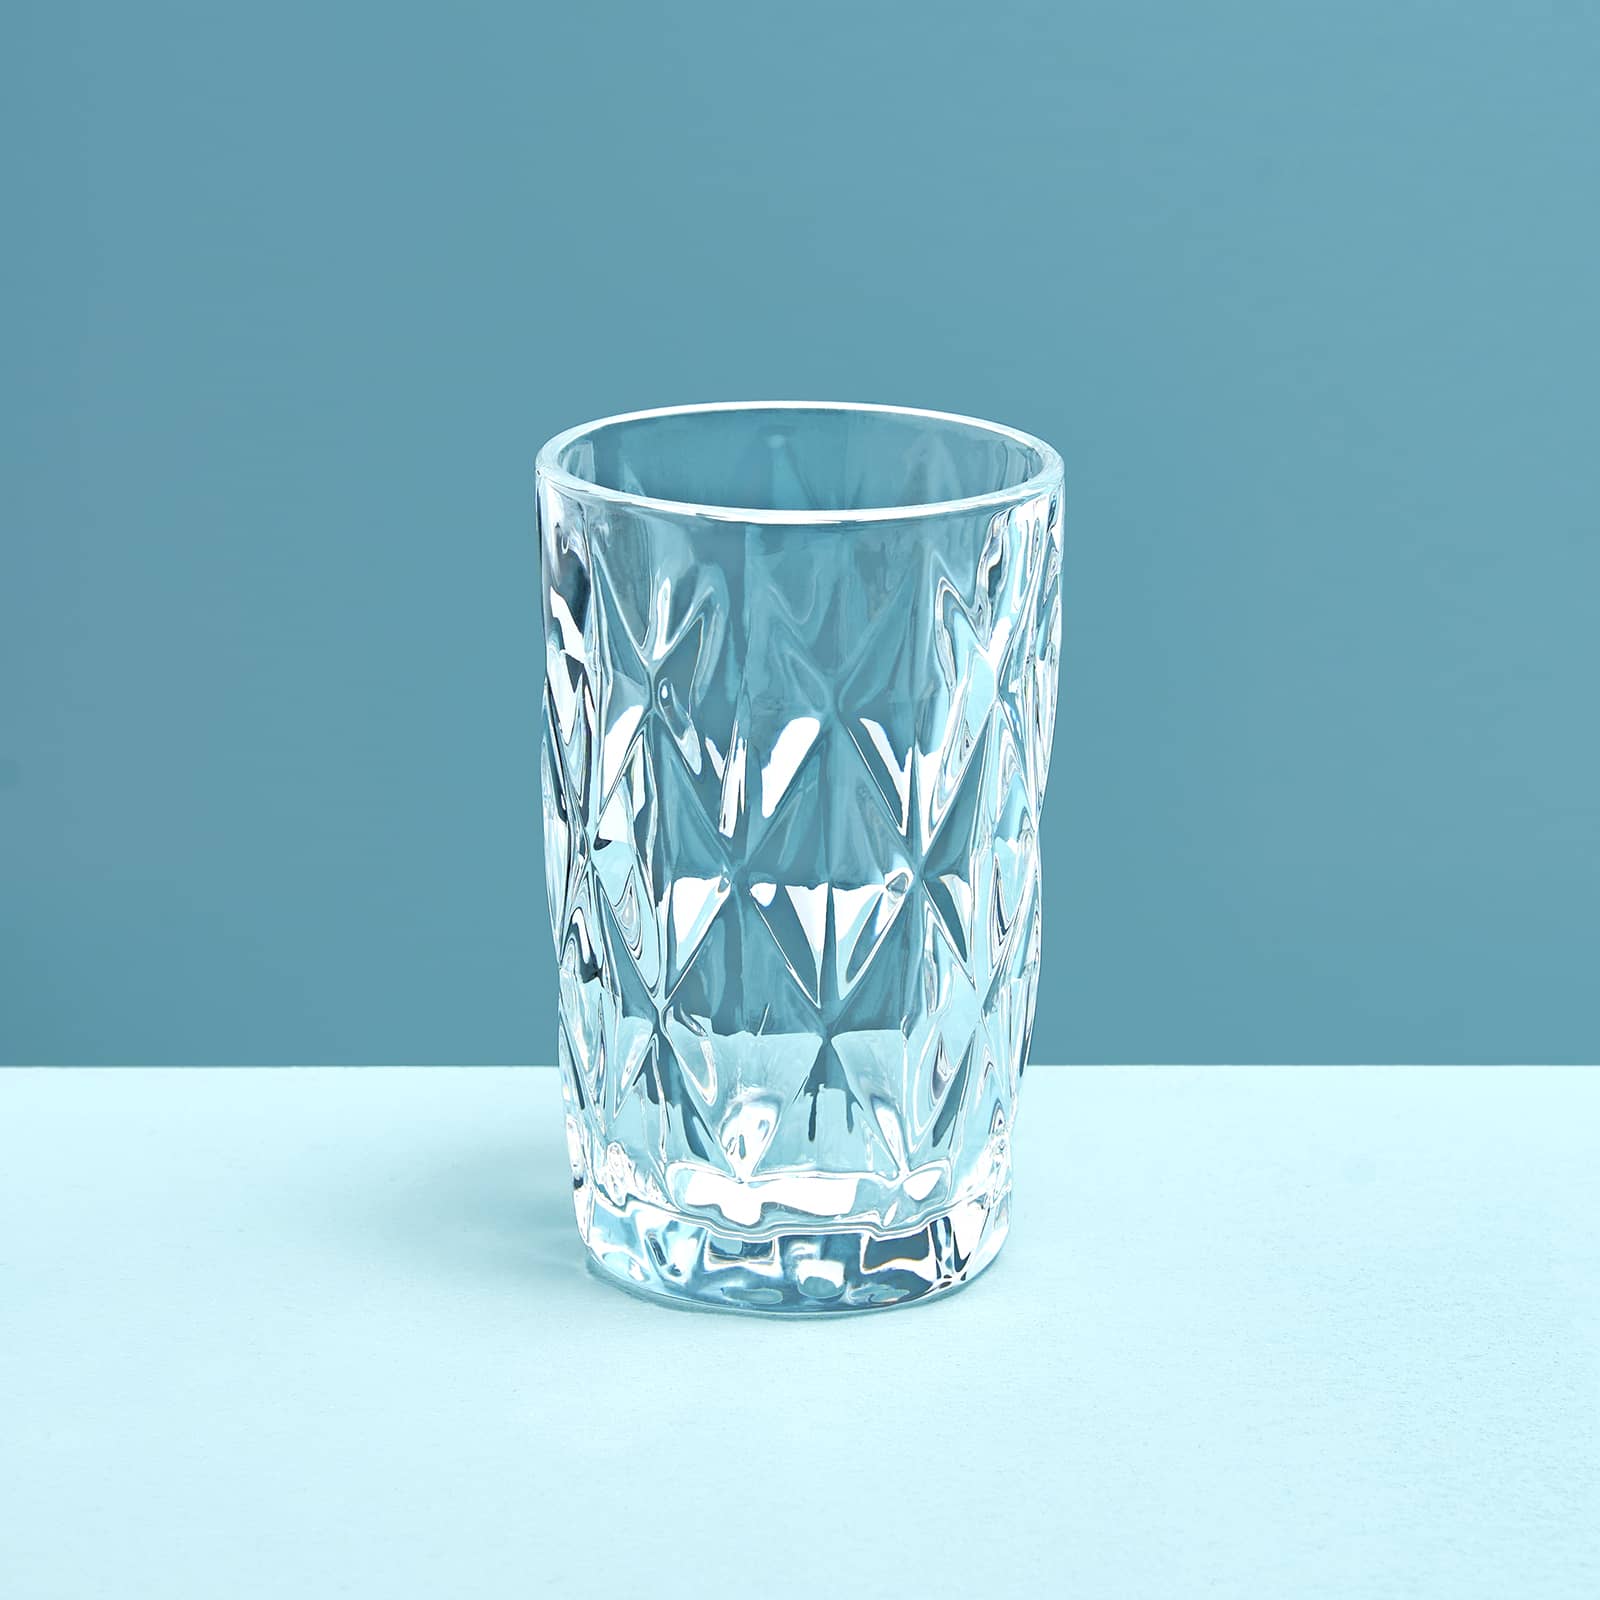 4er-Set Longdrinkglas, klar, Glas, 8x13 cm